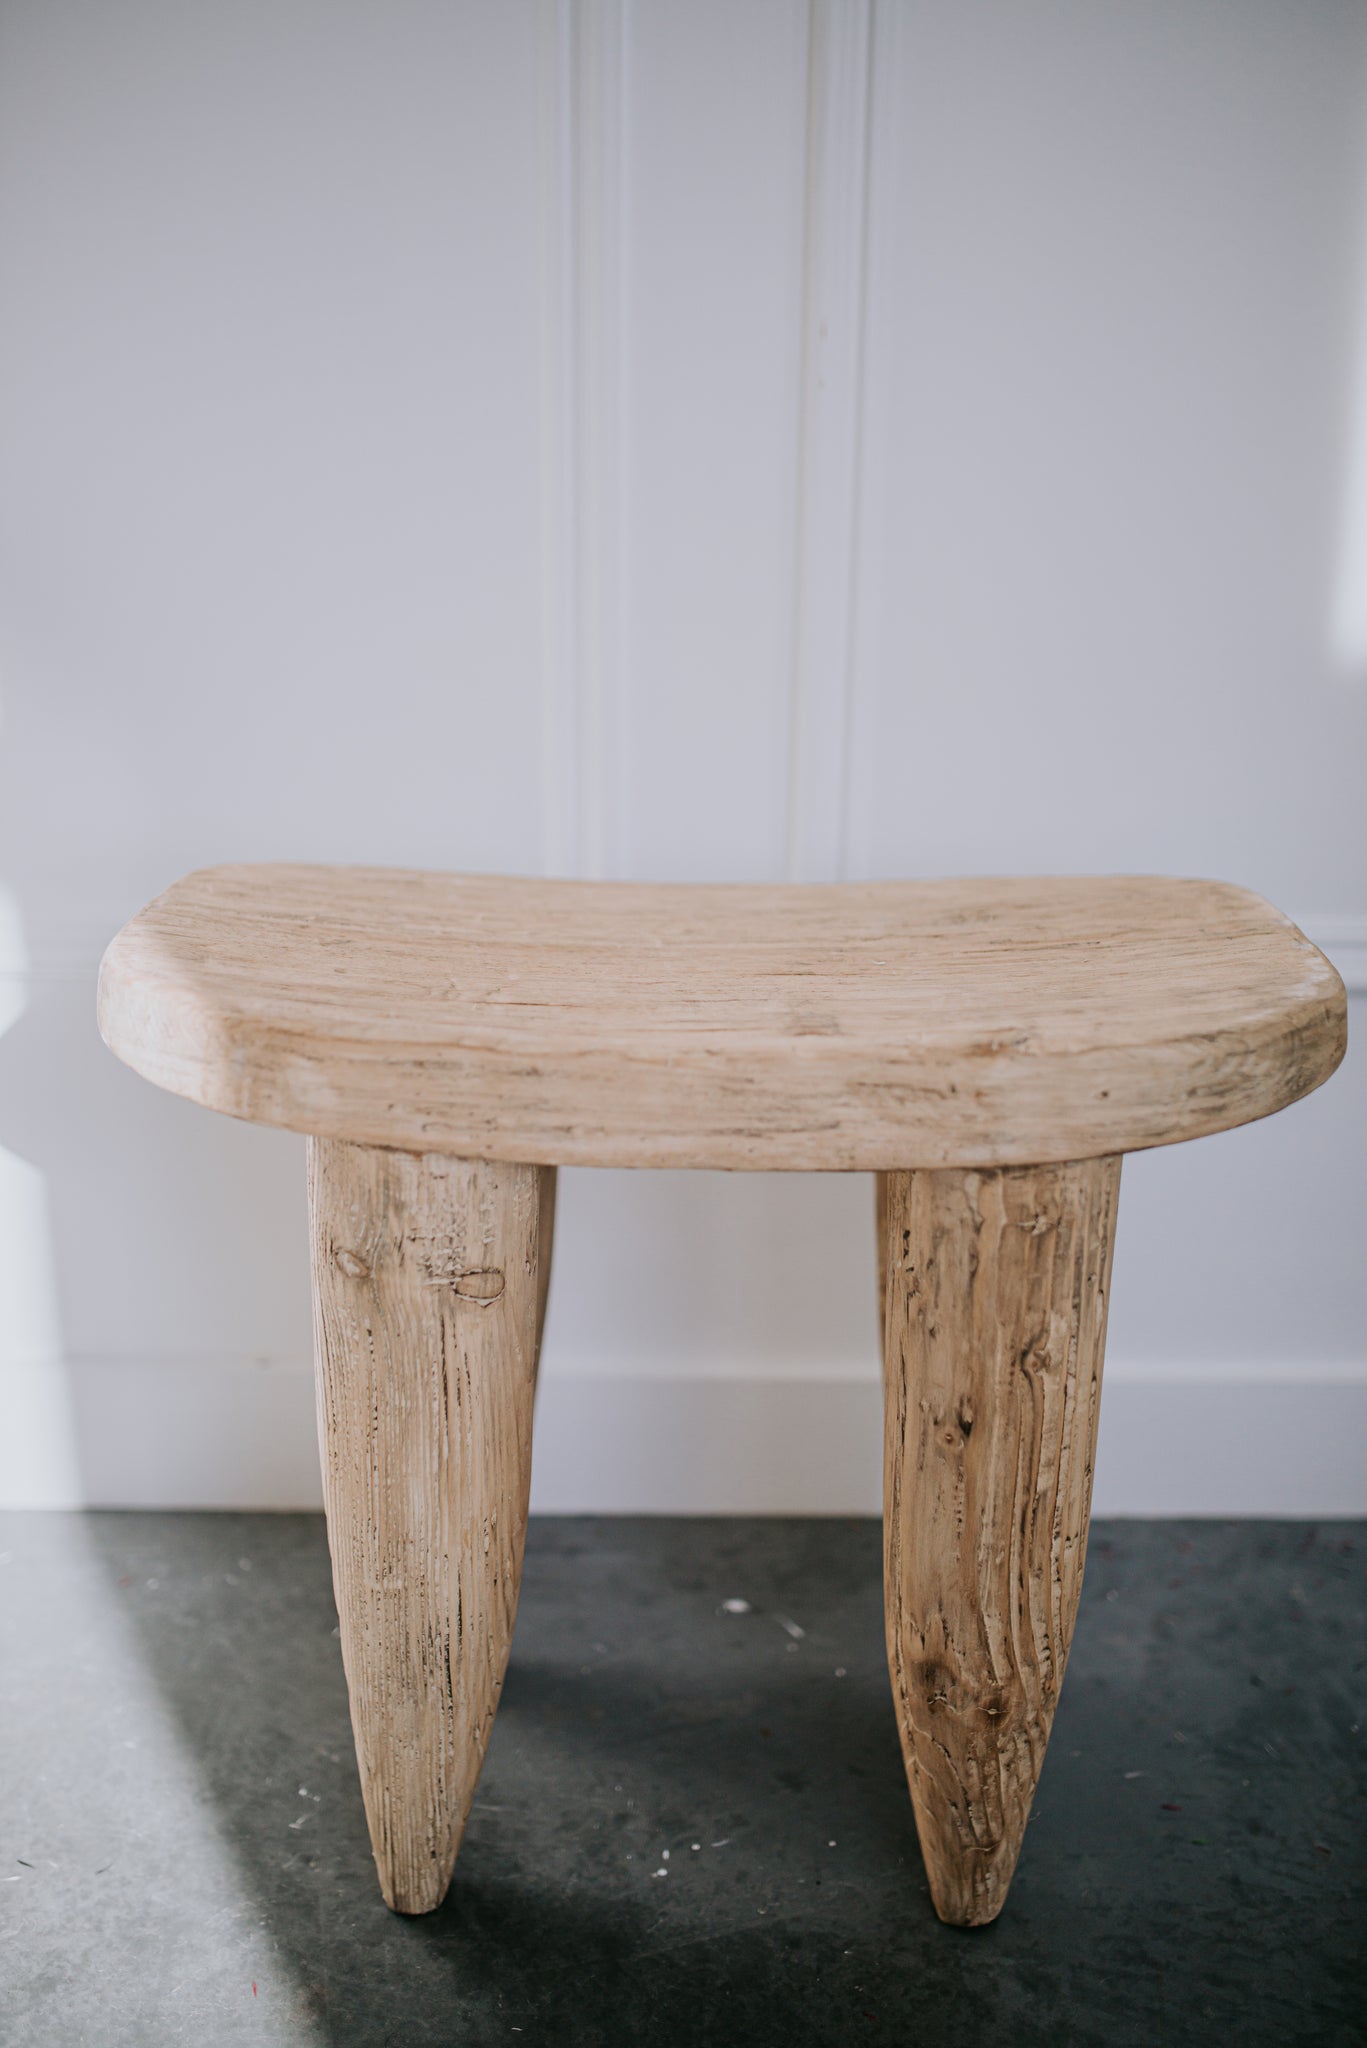 Senufo stools in natural wood